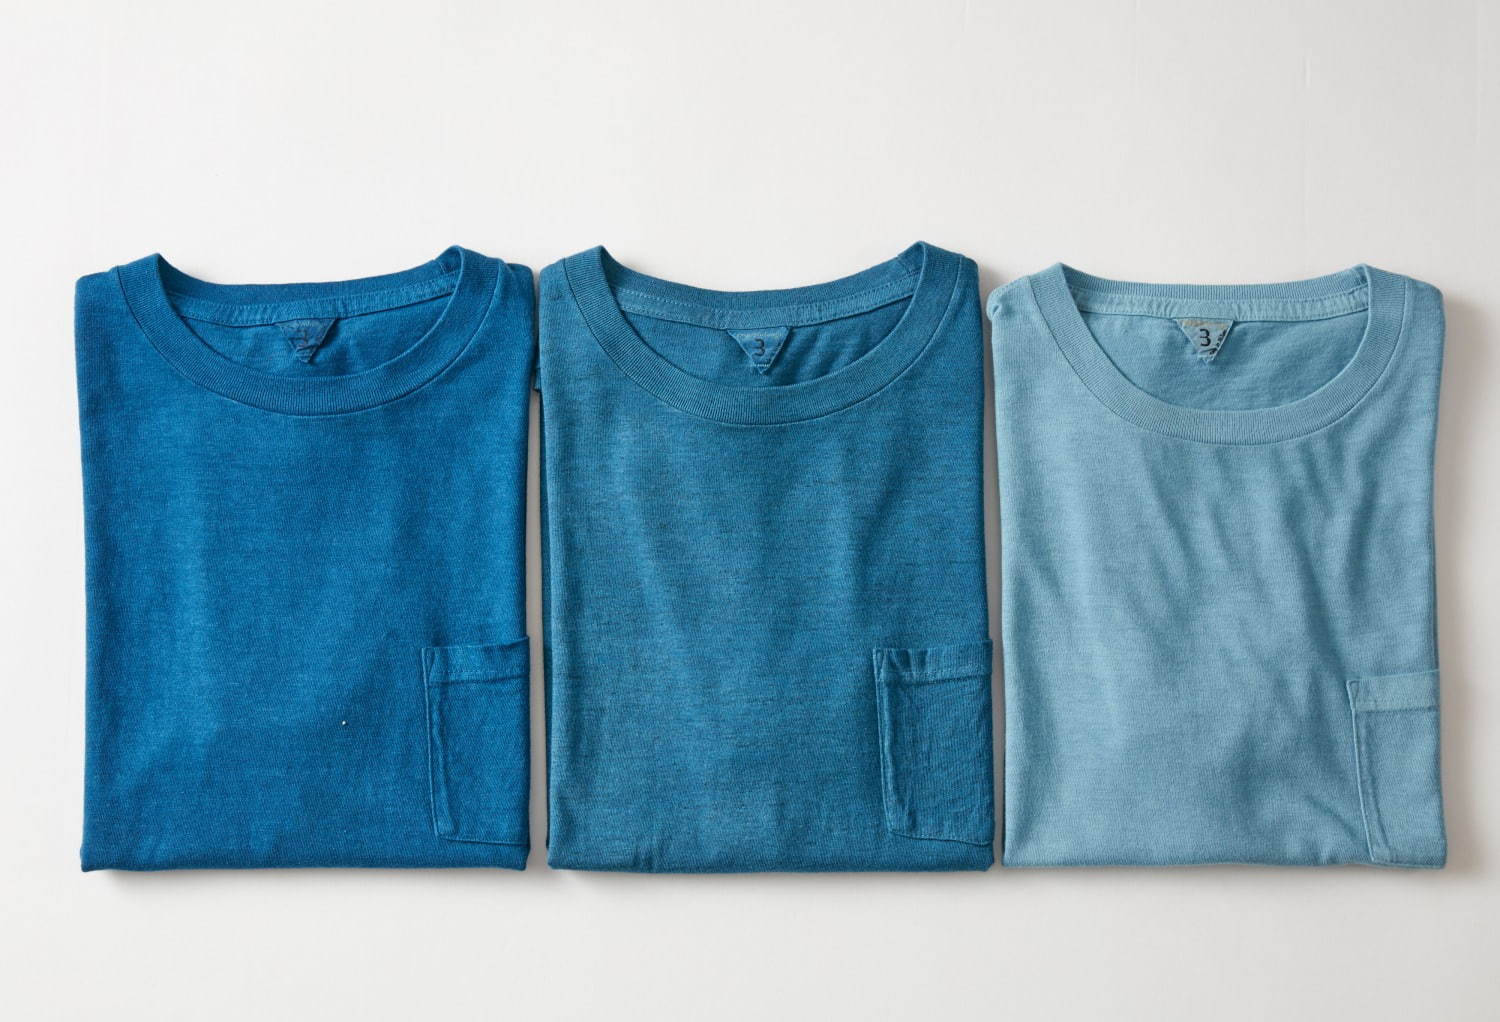 フィルメランジェ 藍染め職人集団リトマス 天然藍で染めたtシャツや